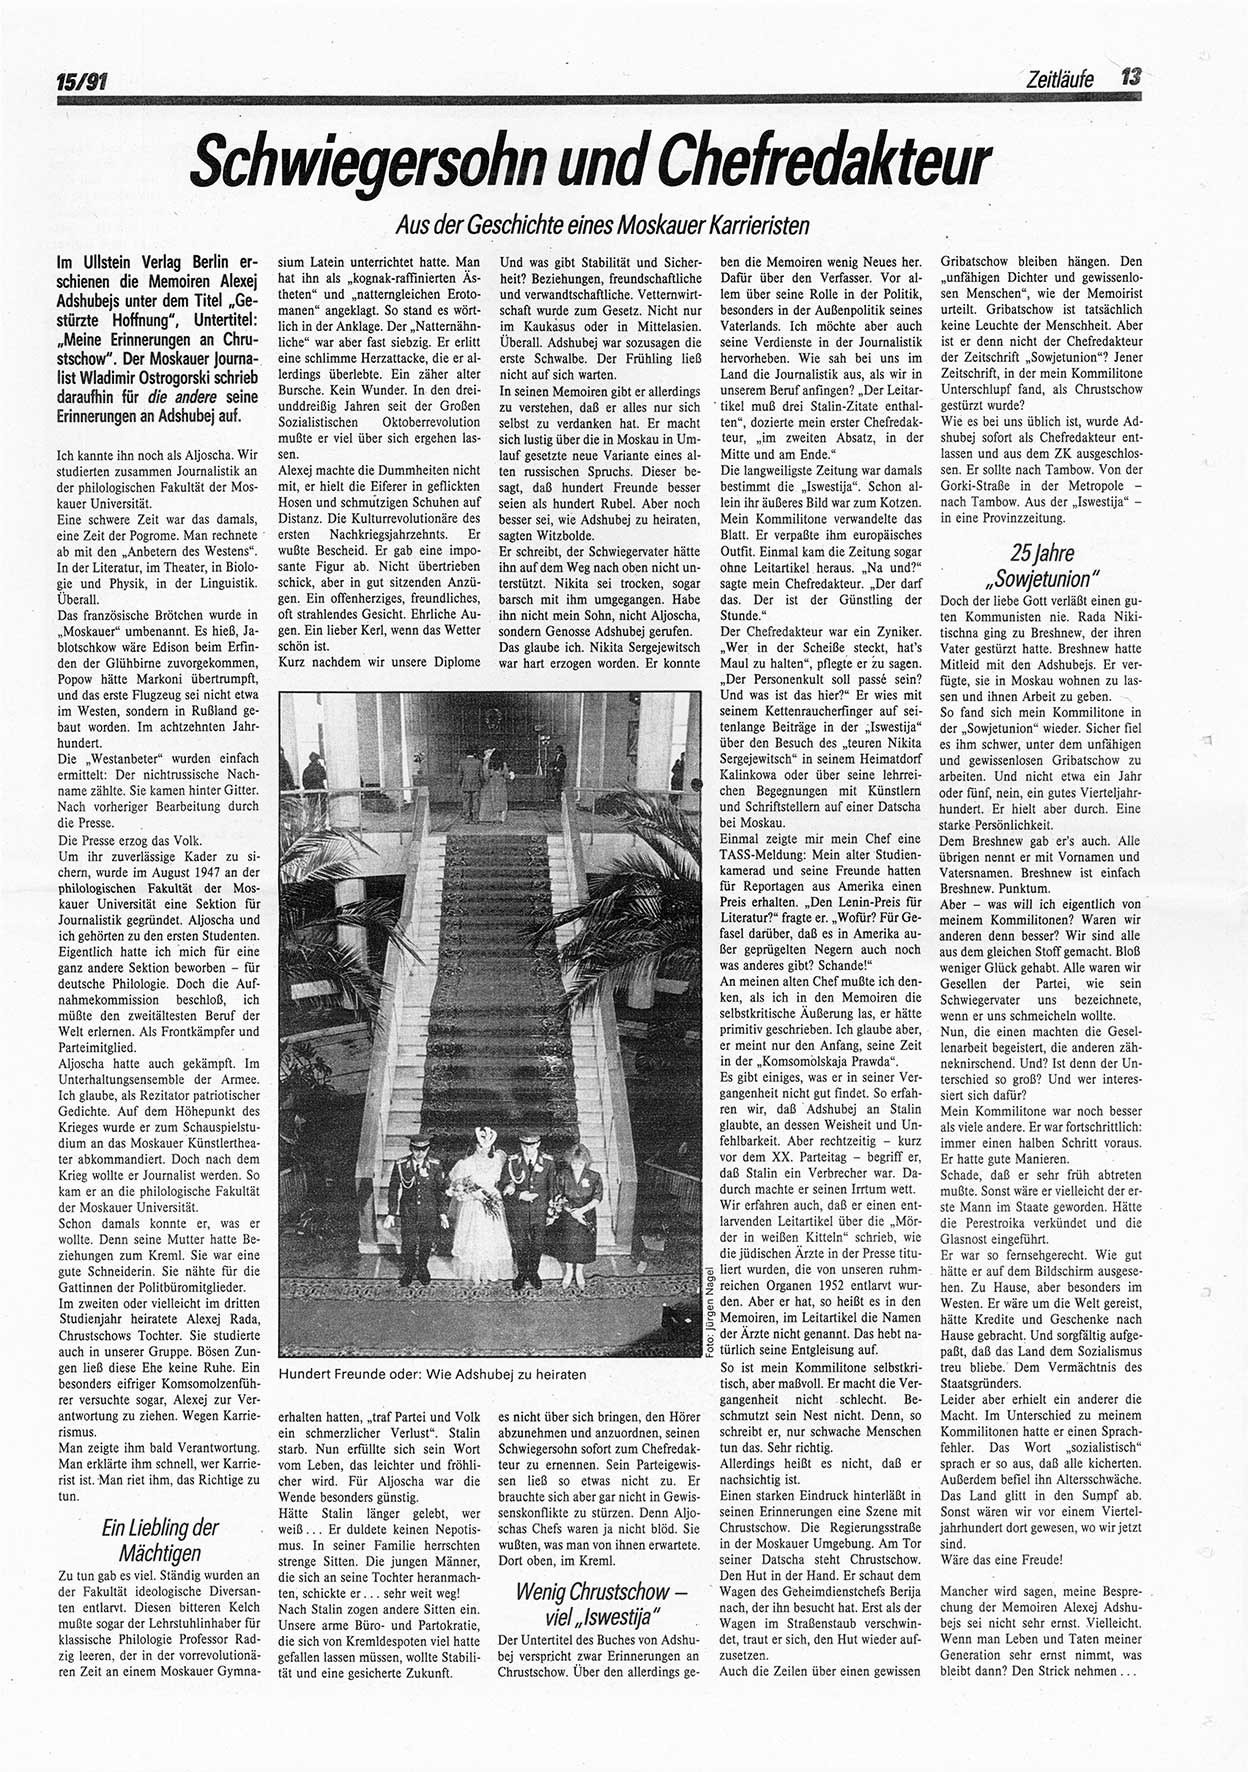 Die Andere, Unabhängige Wochenzeitung für Politik, Kultur und Kunst, Ausgabe 15 vom 10.4.1991, Seite 13 (And. W.-Zg. Ausg. 15 1991, S. 13)